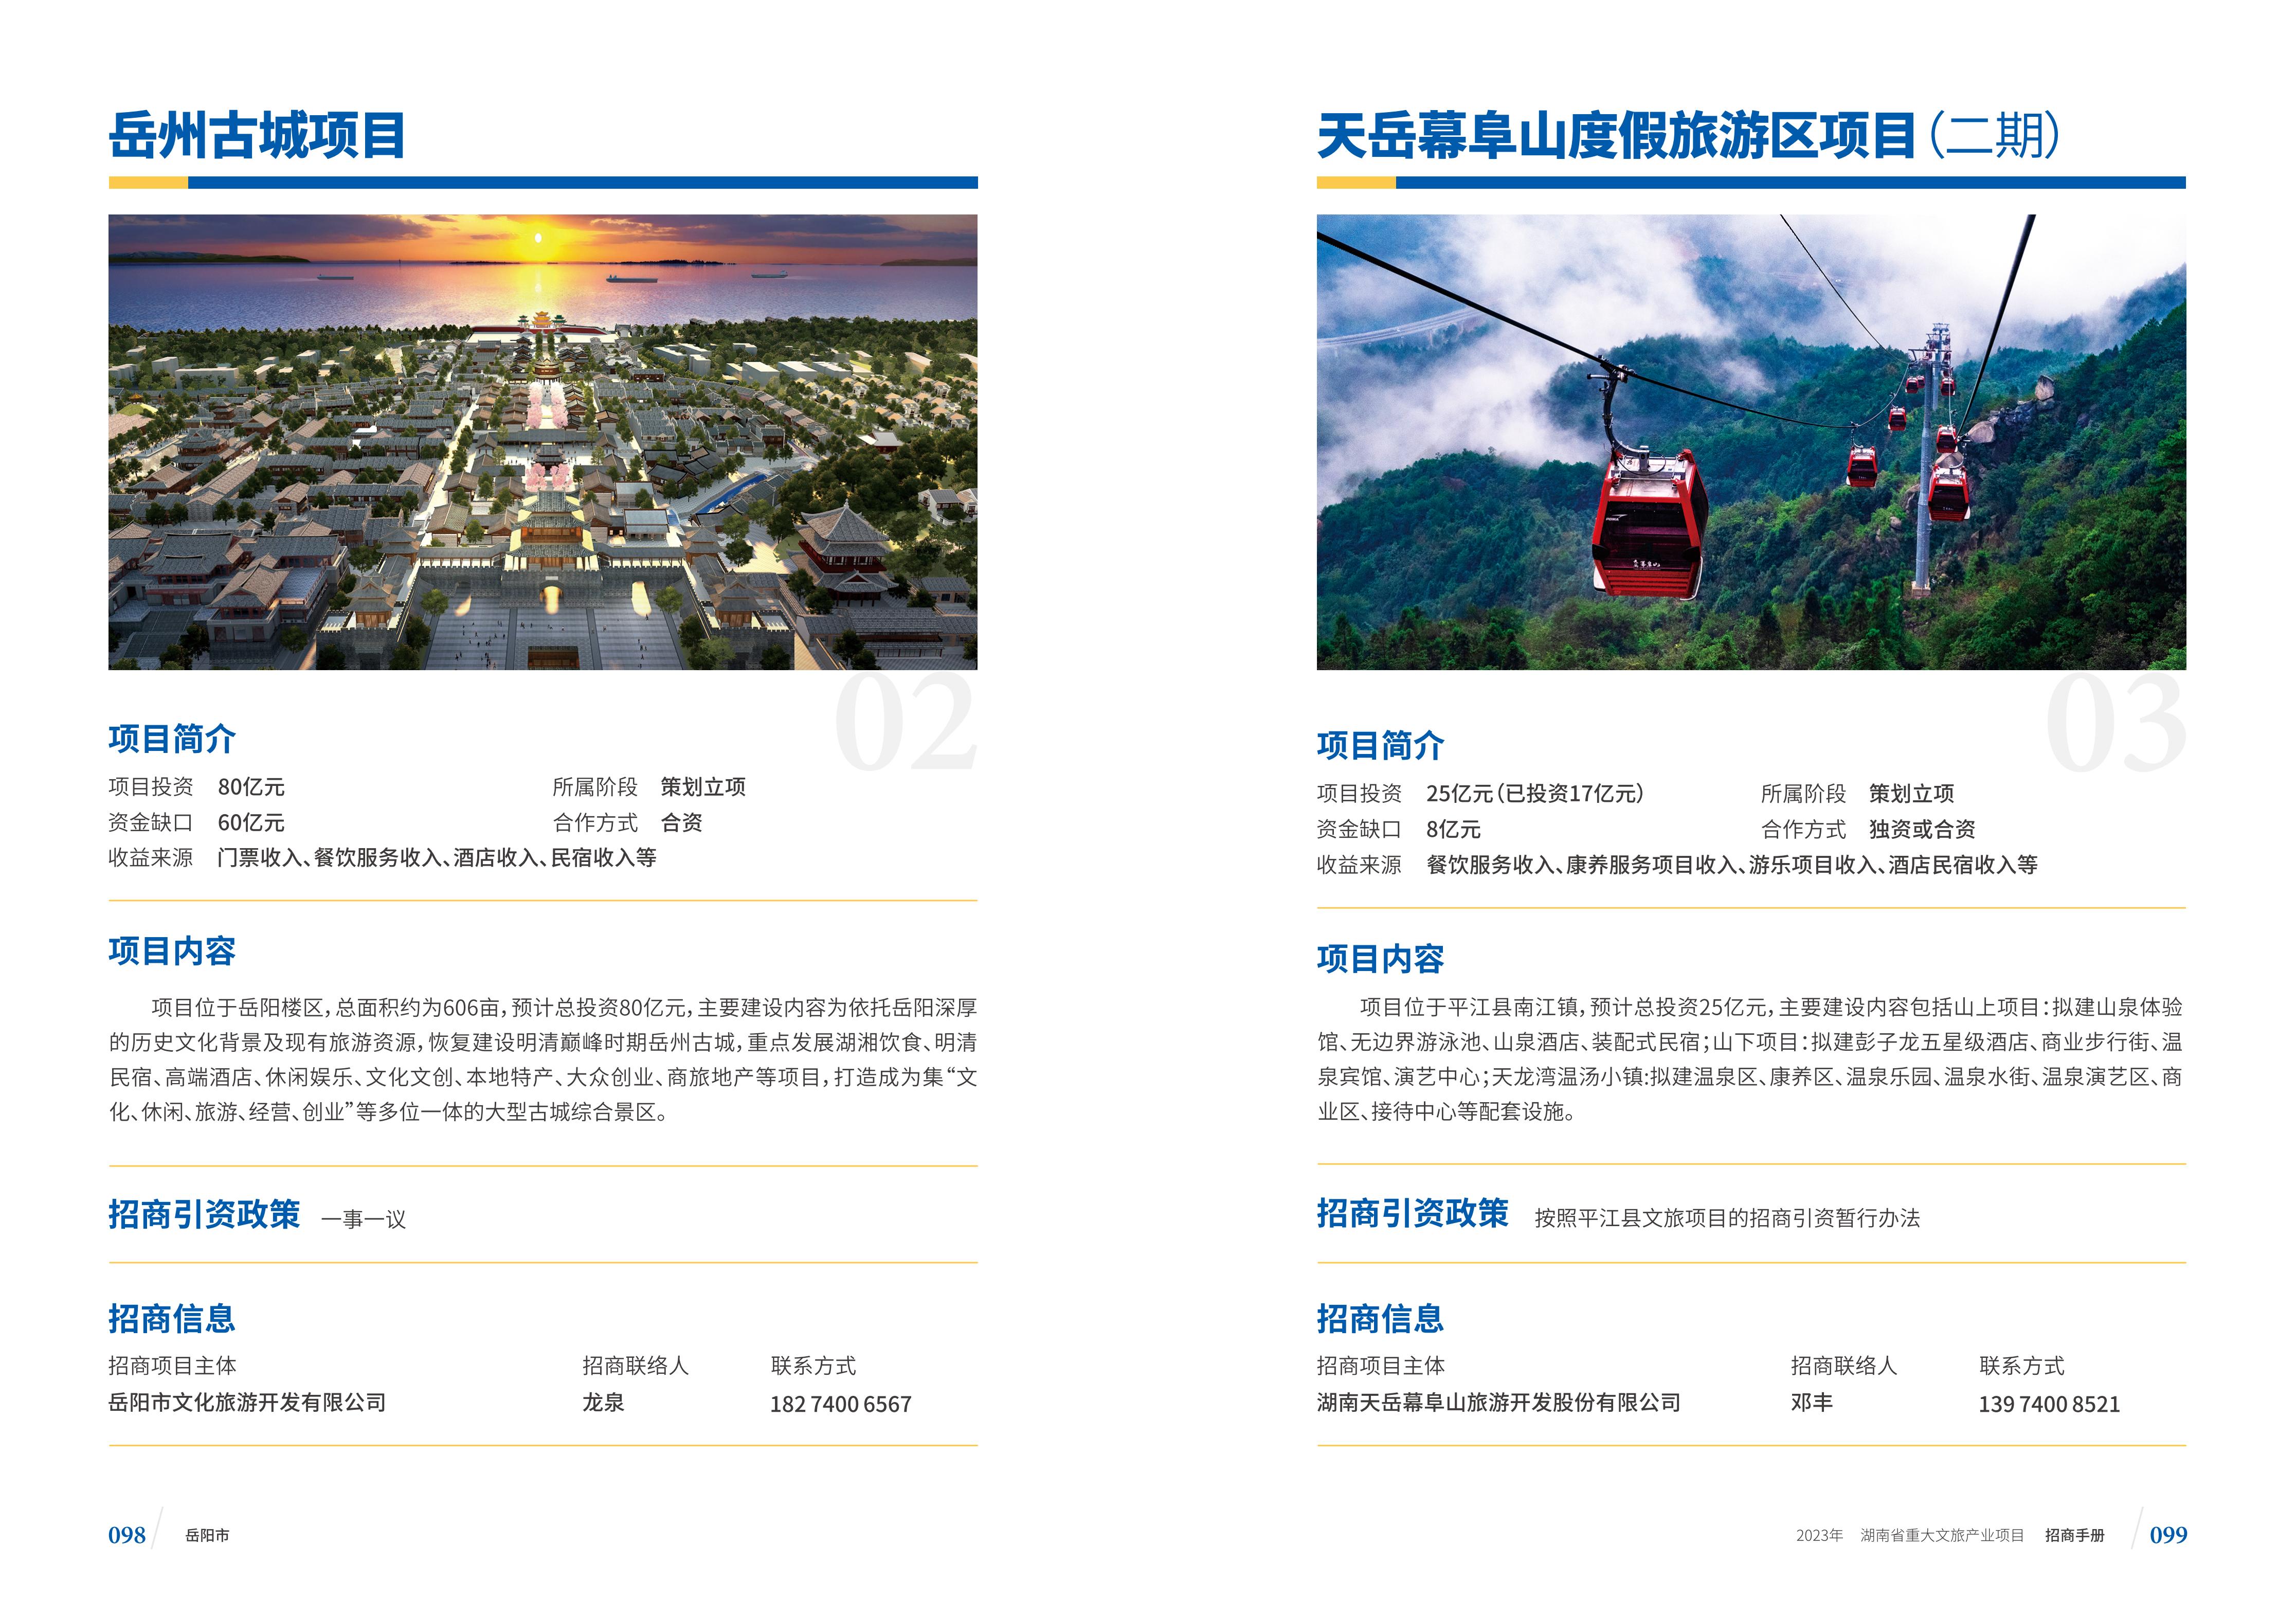 湖南省重大文旅产业项目招手册线上链接版_57.jpg